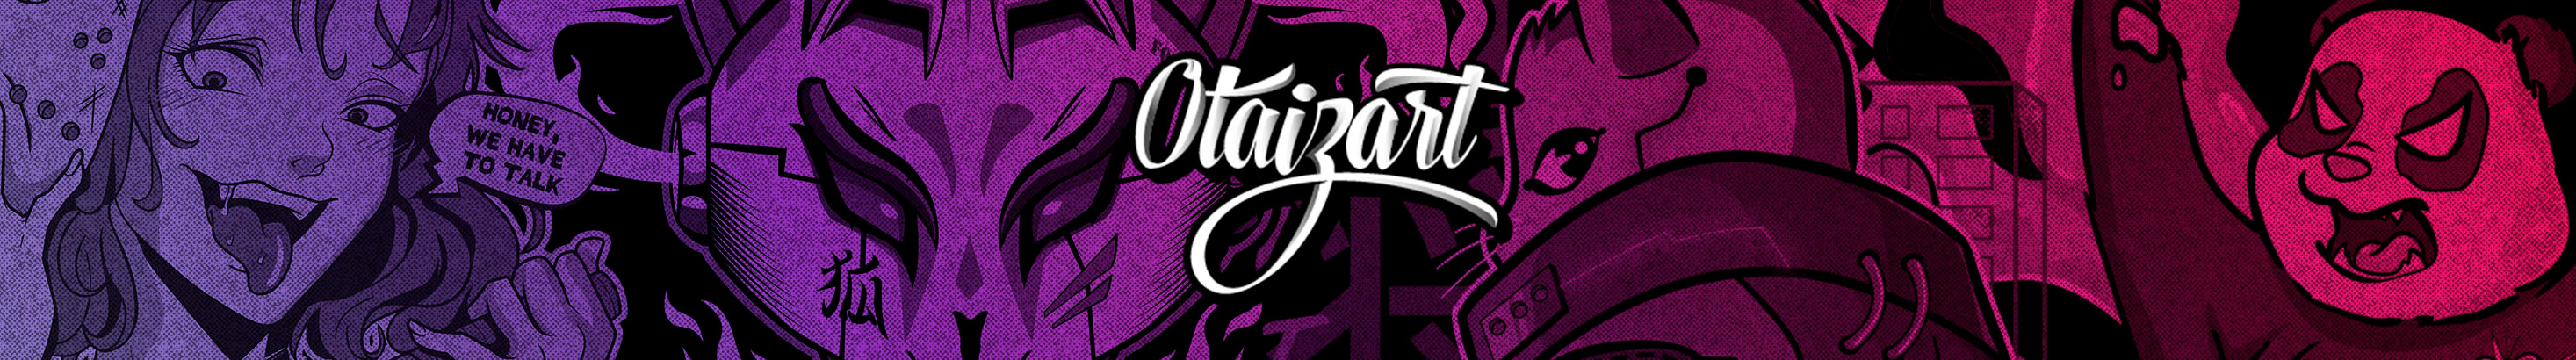 oscar otaiza's profile banner